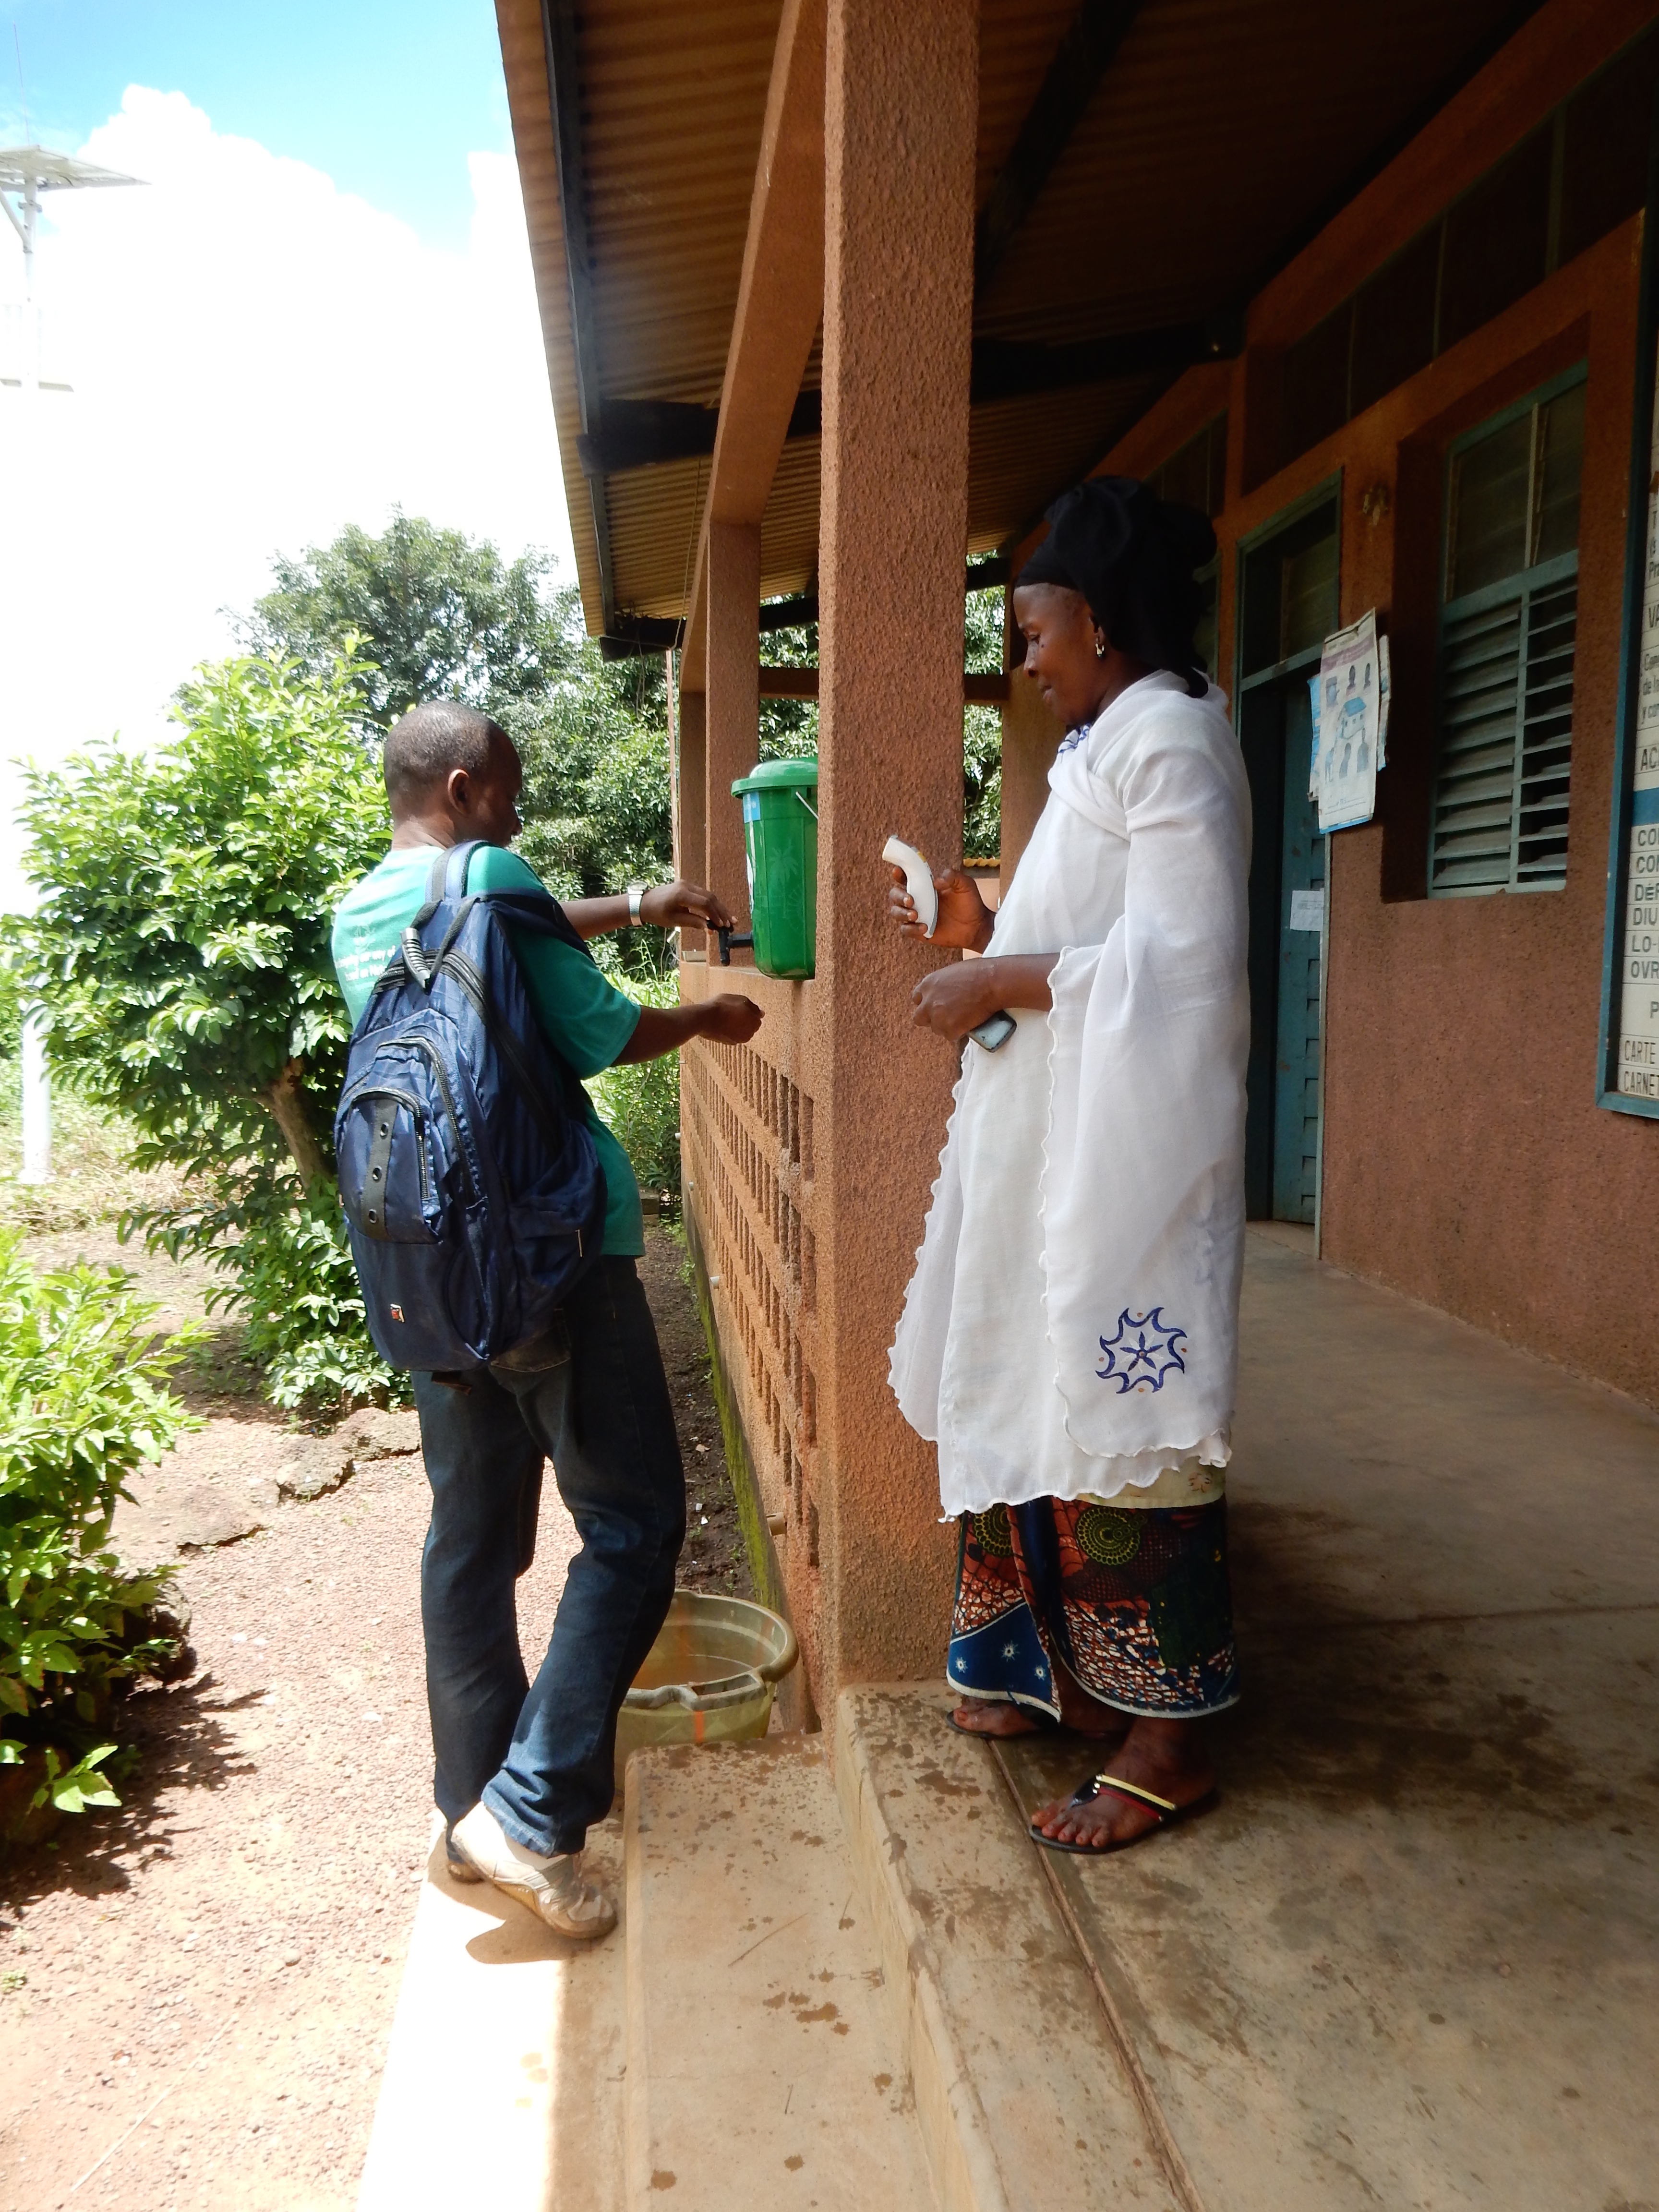 Ebola handwashing and temperature